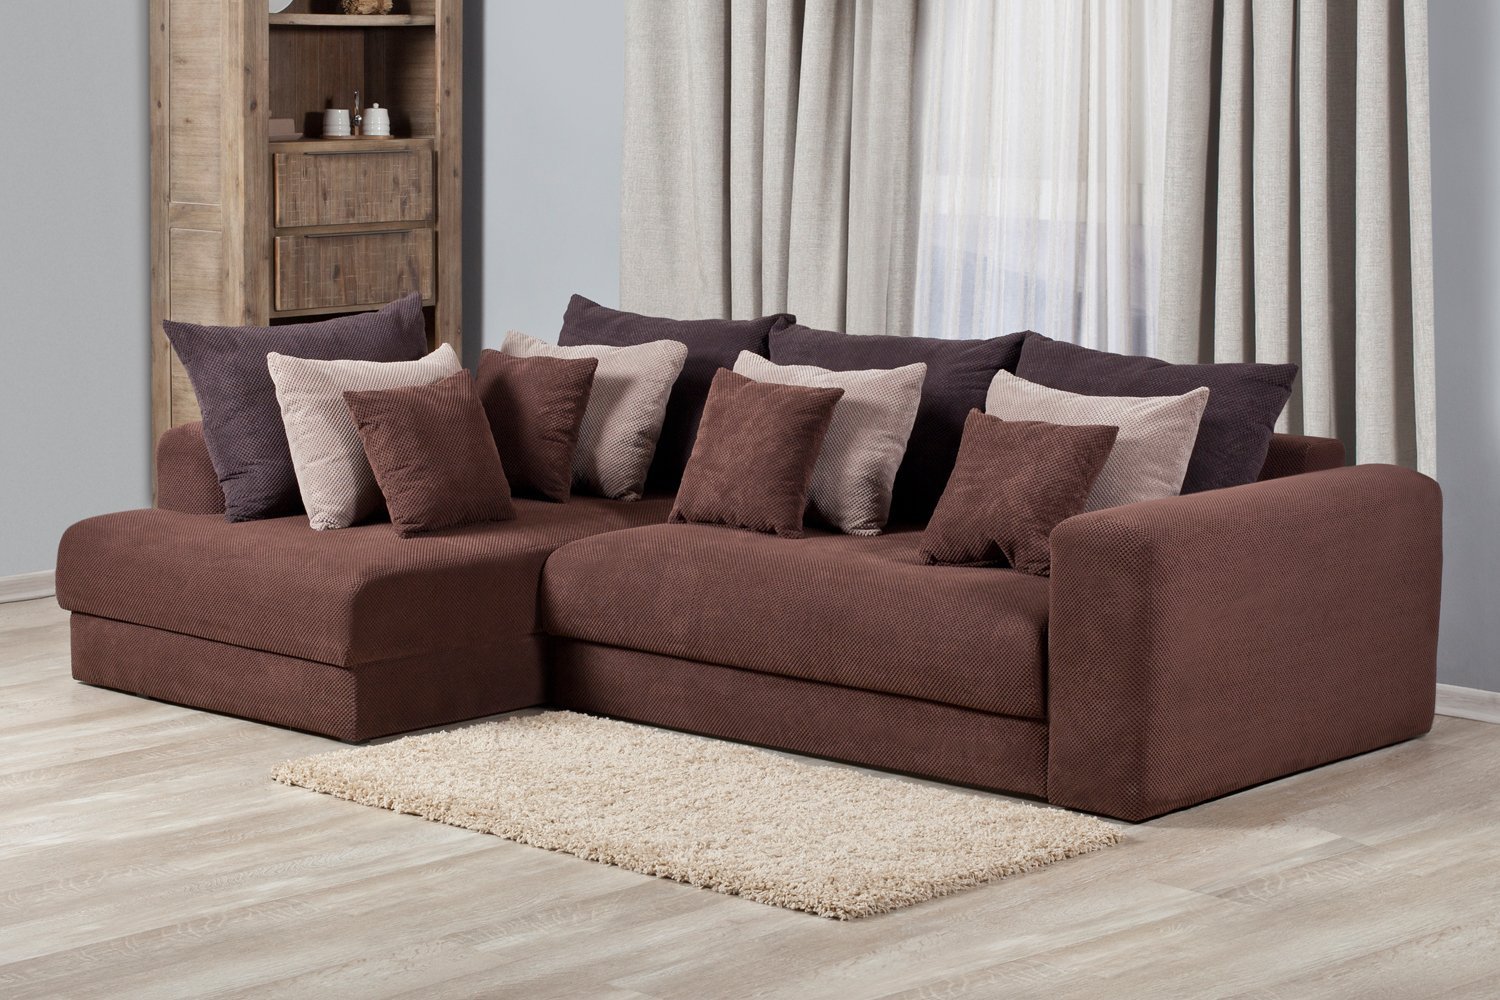 коричневый угловой диван в интерьере